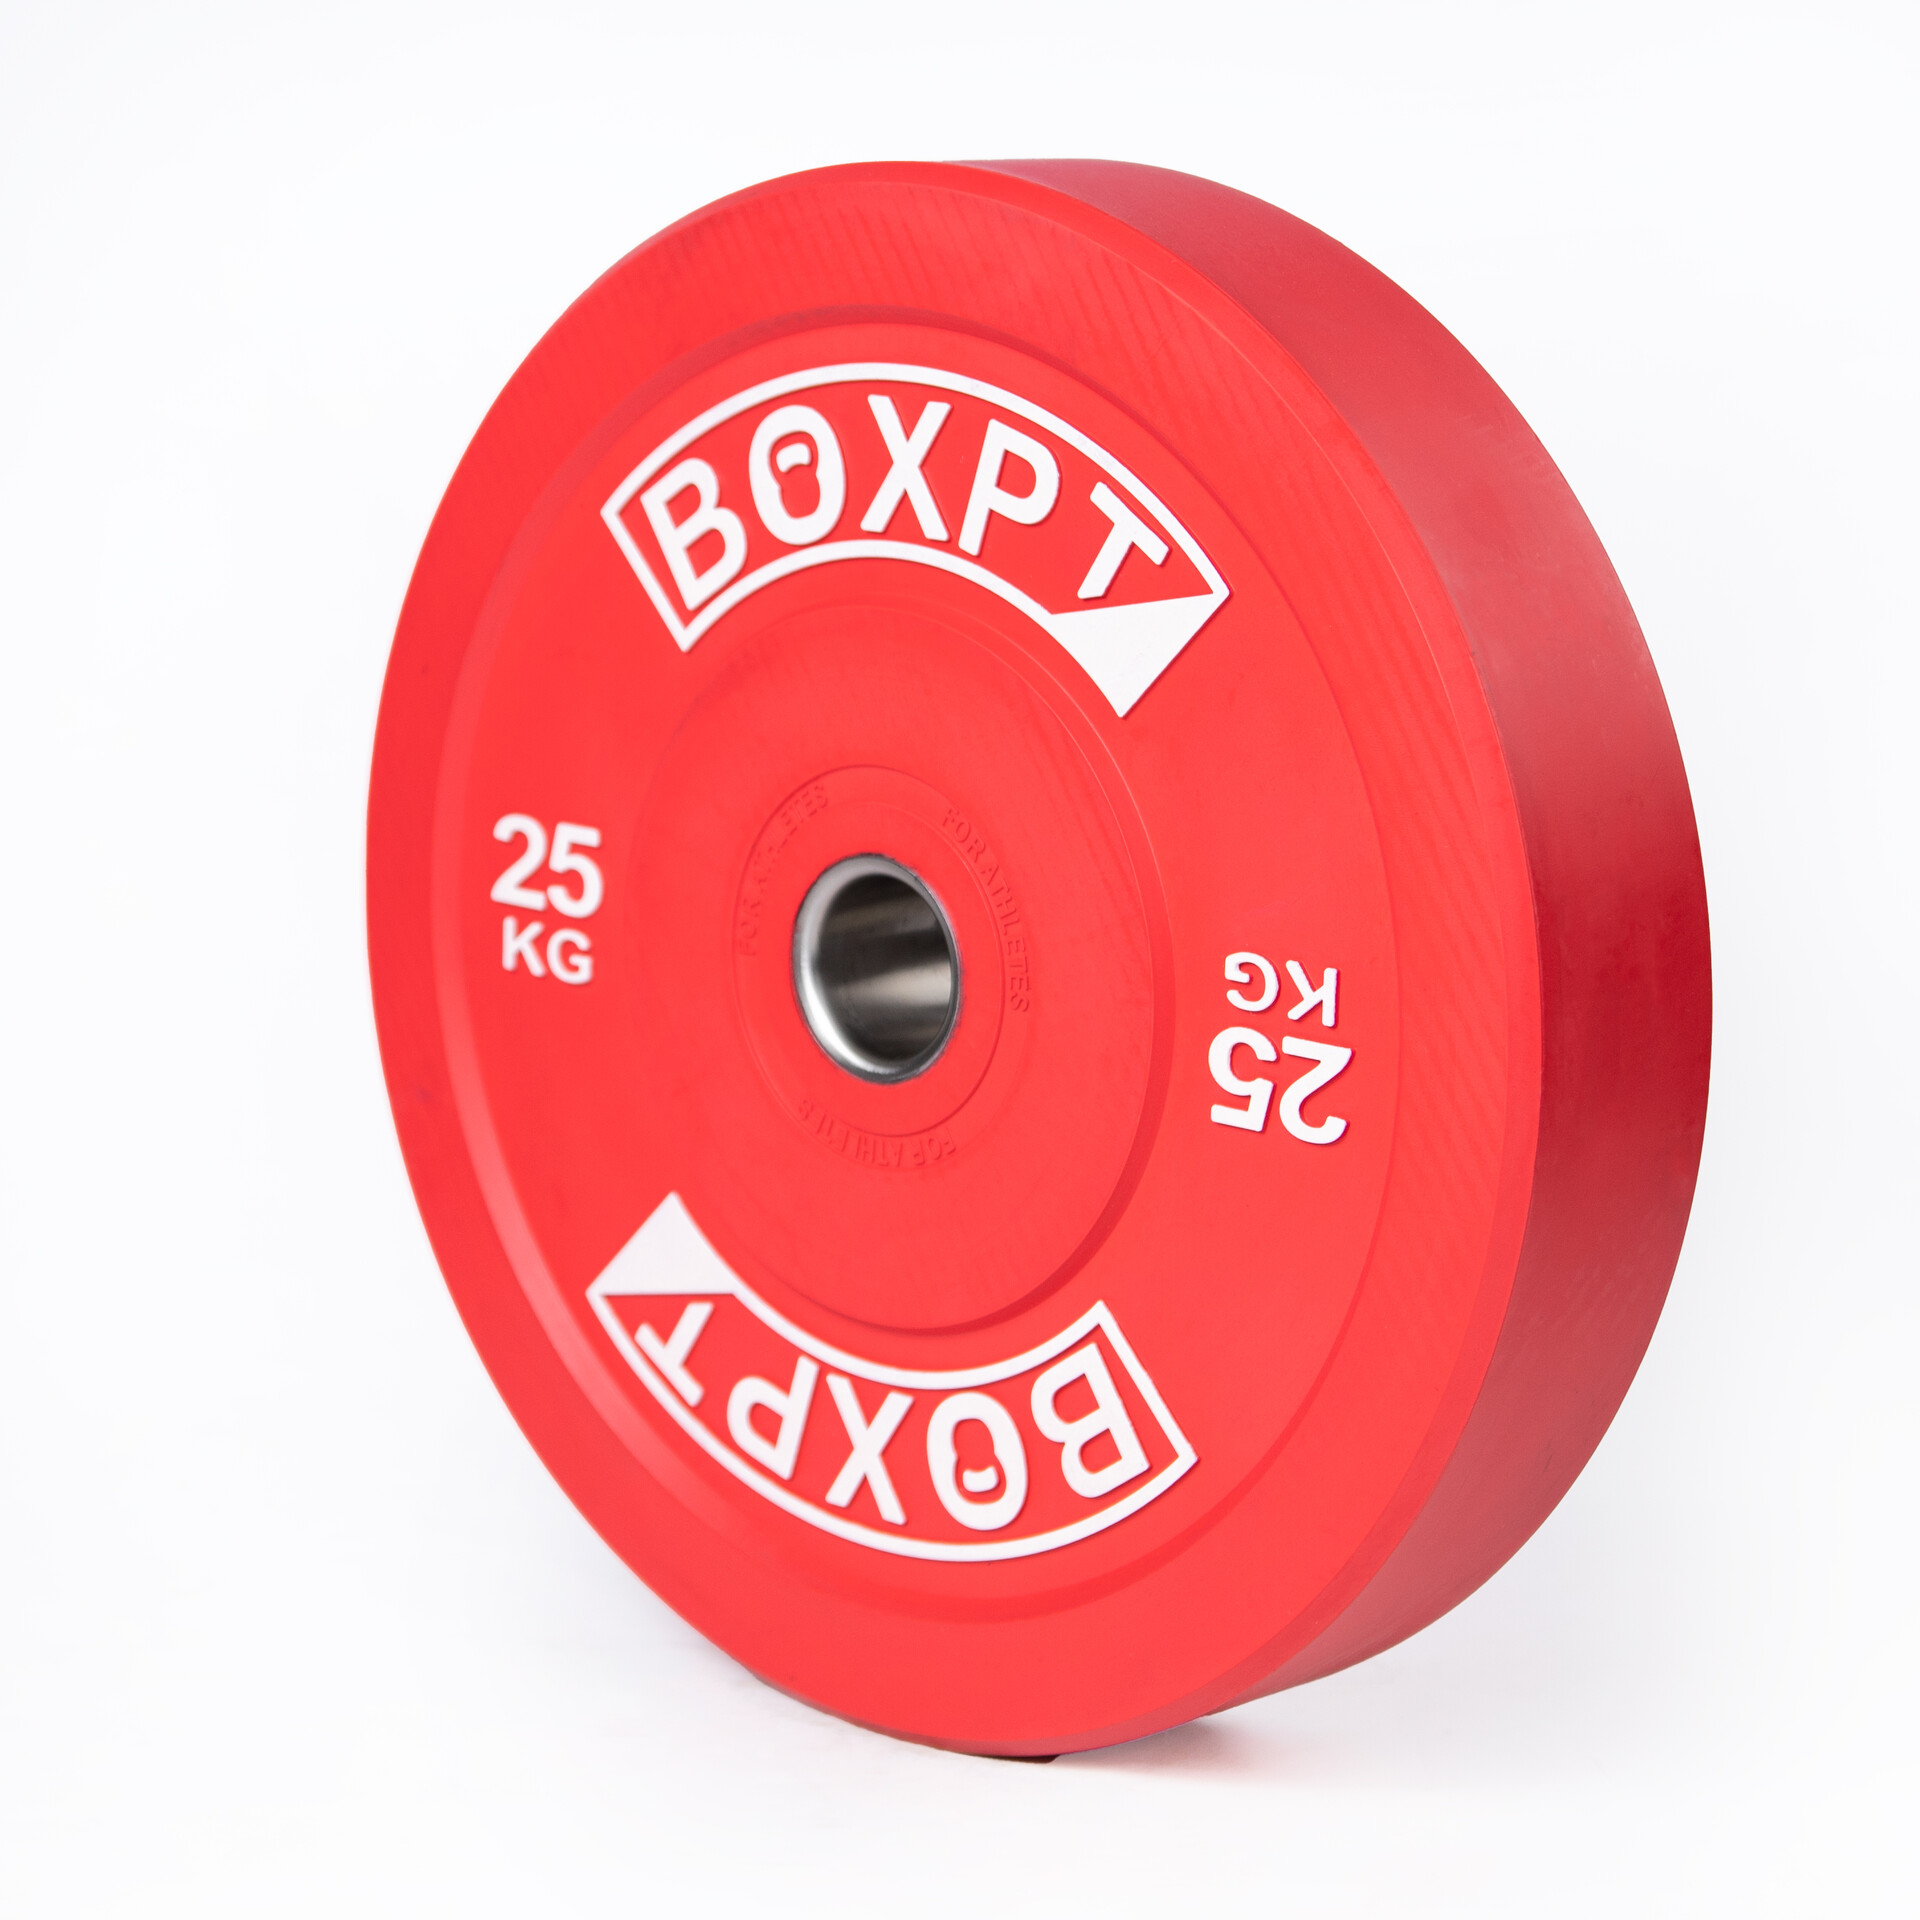 Disco Colorido Boxpt  25kg - rojo - 